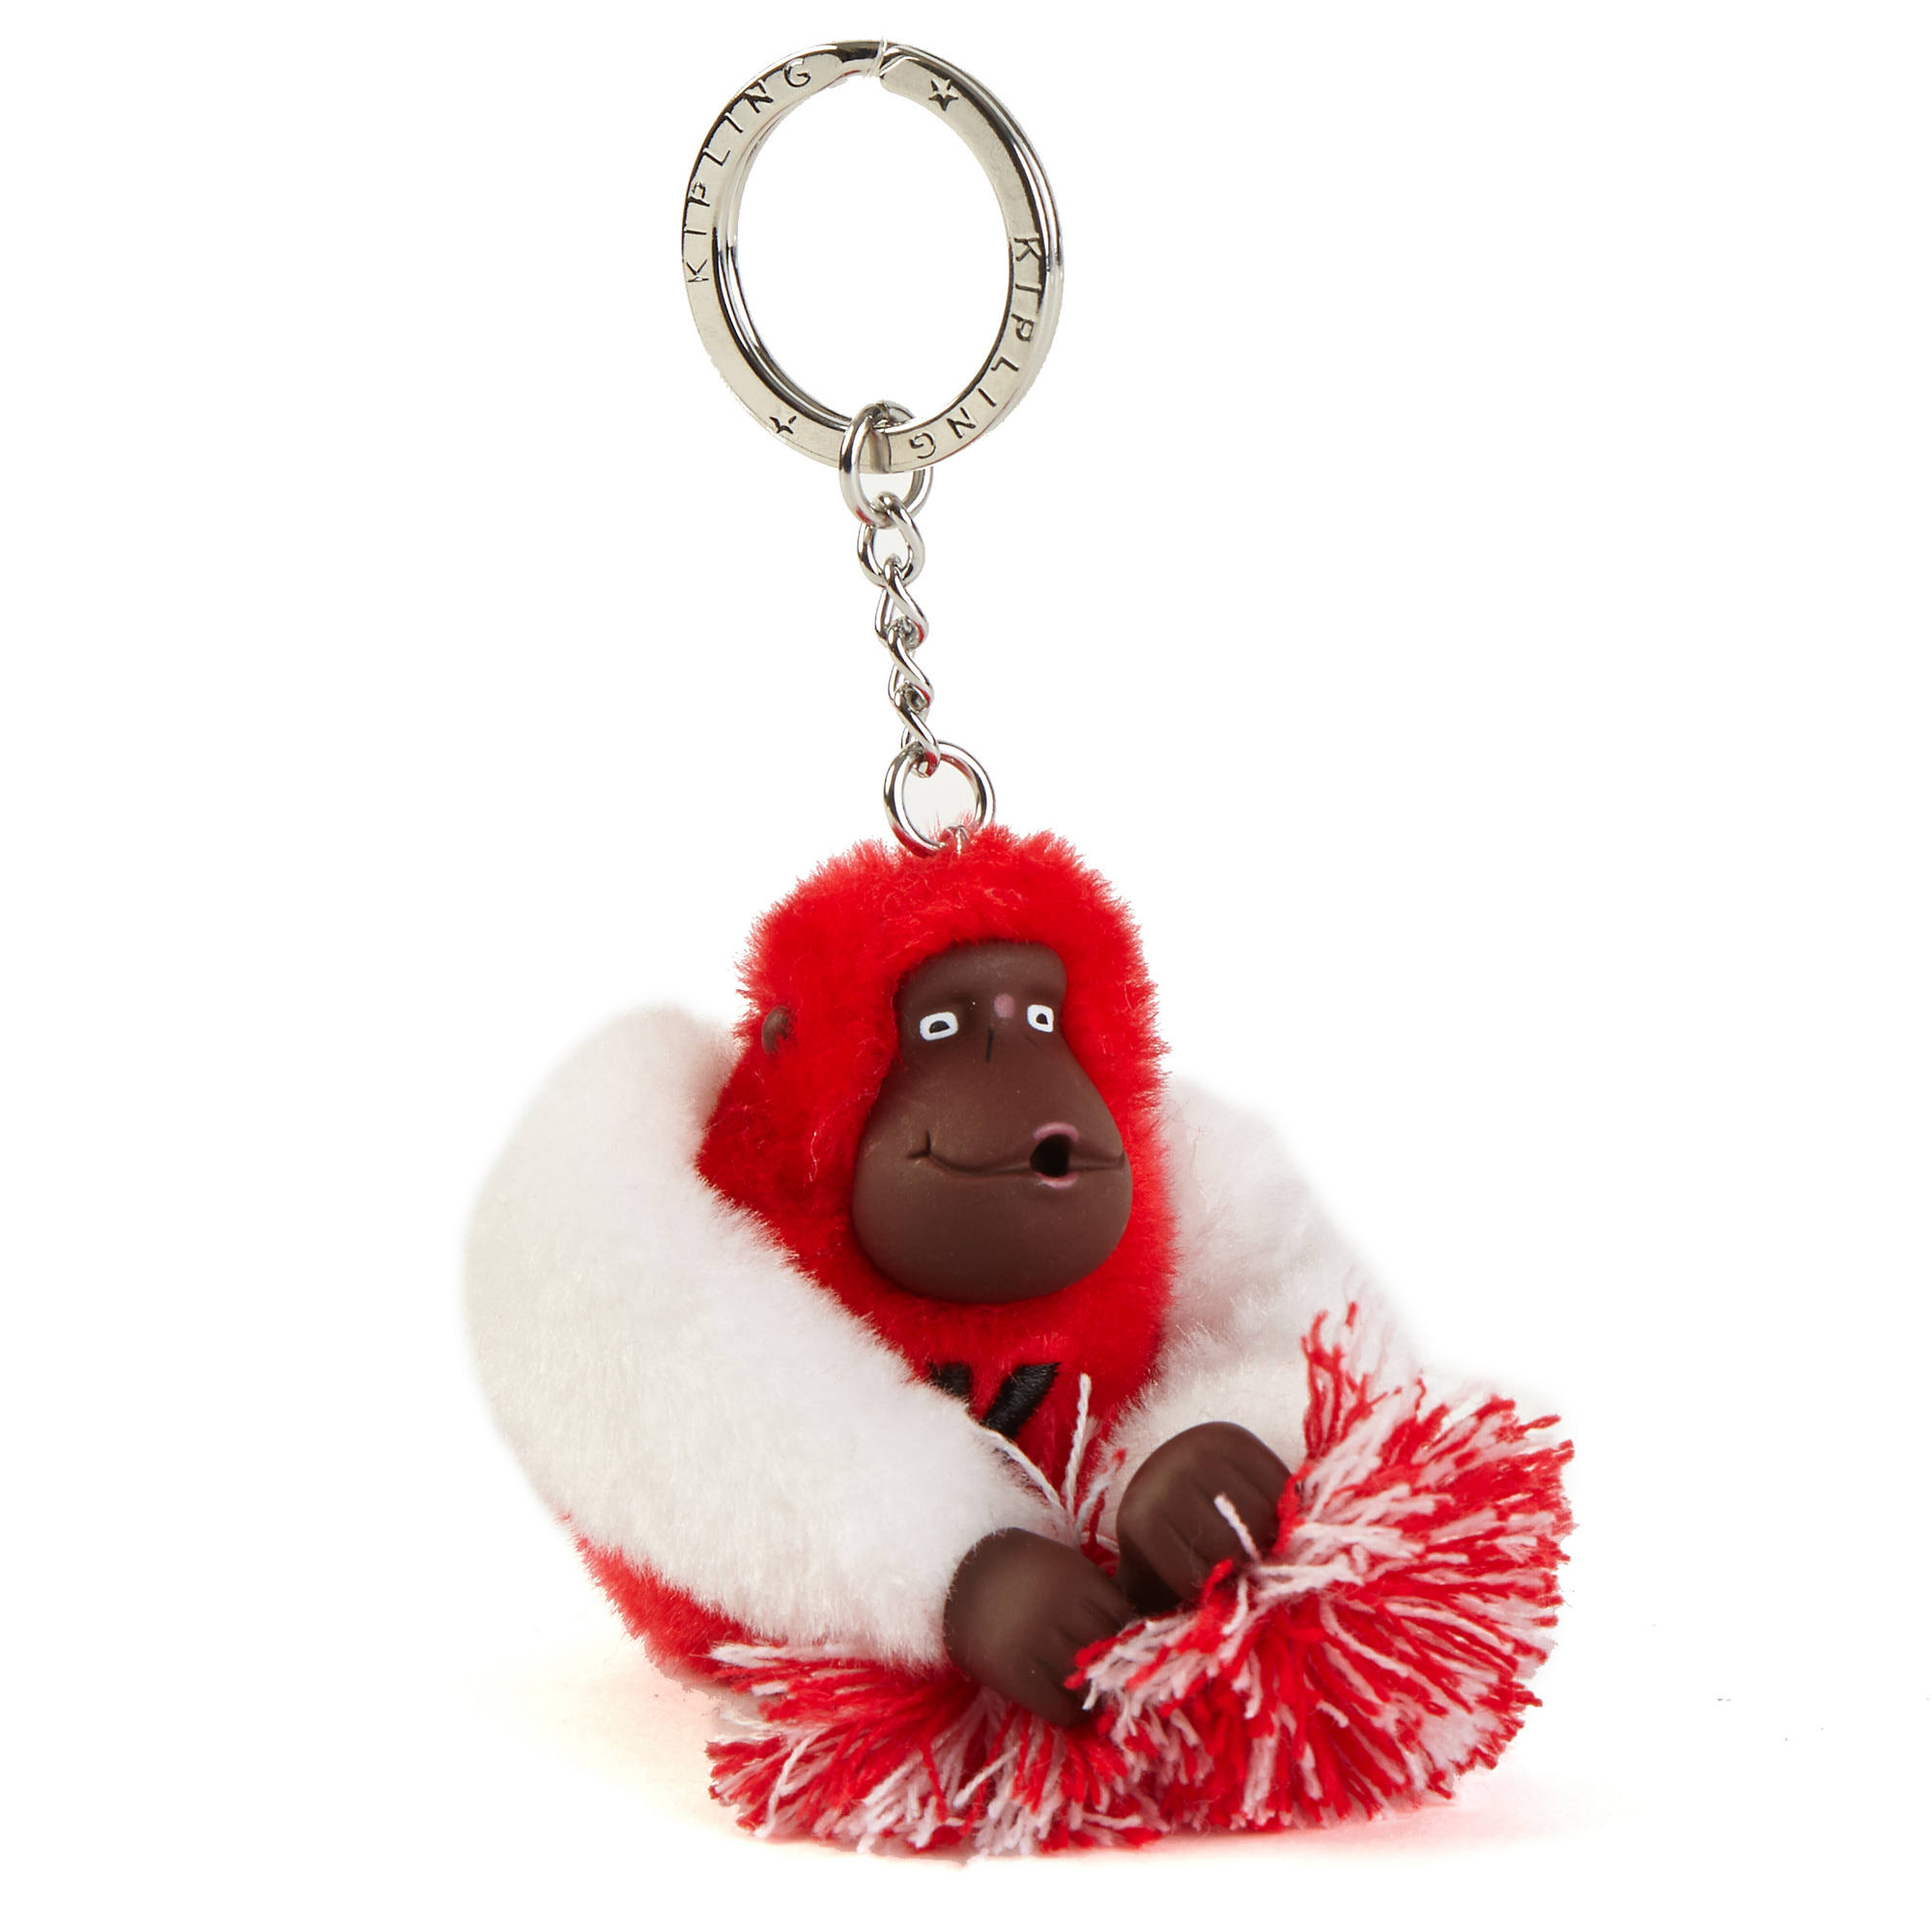 Go Kipling Monkey Keychain |